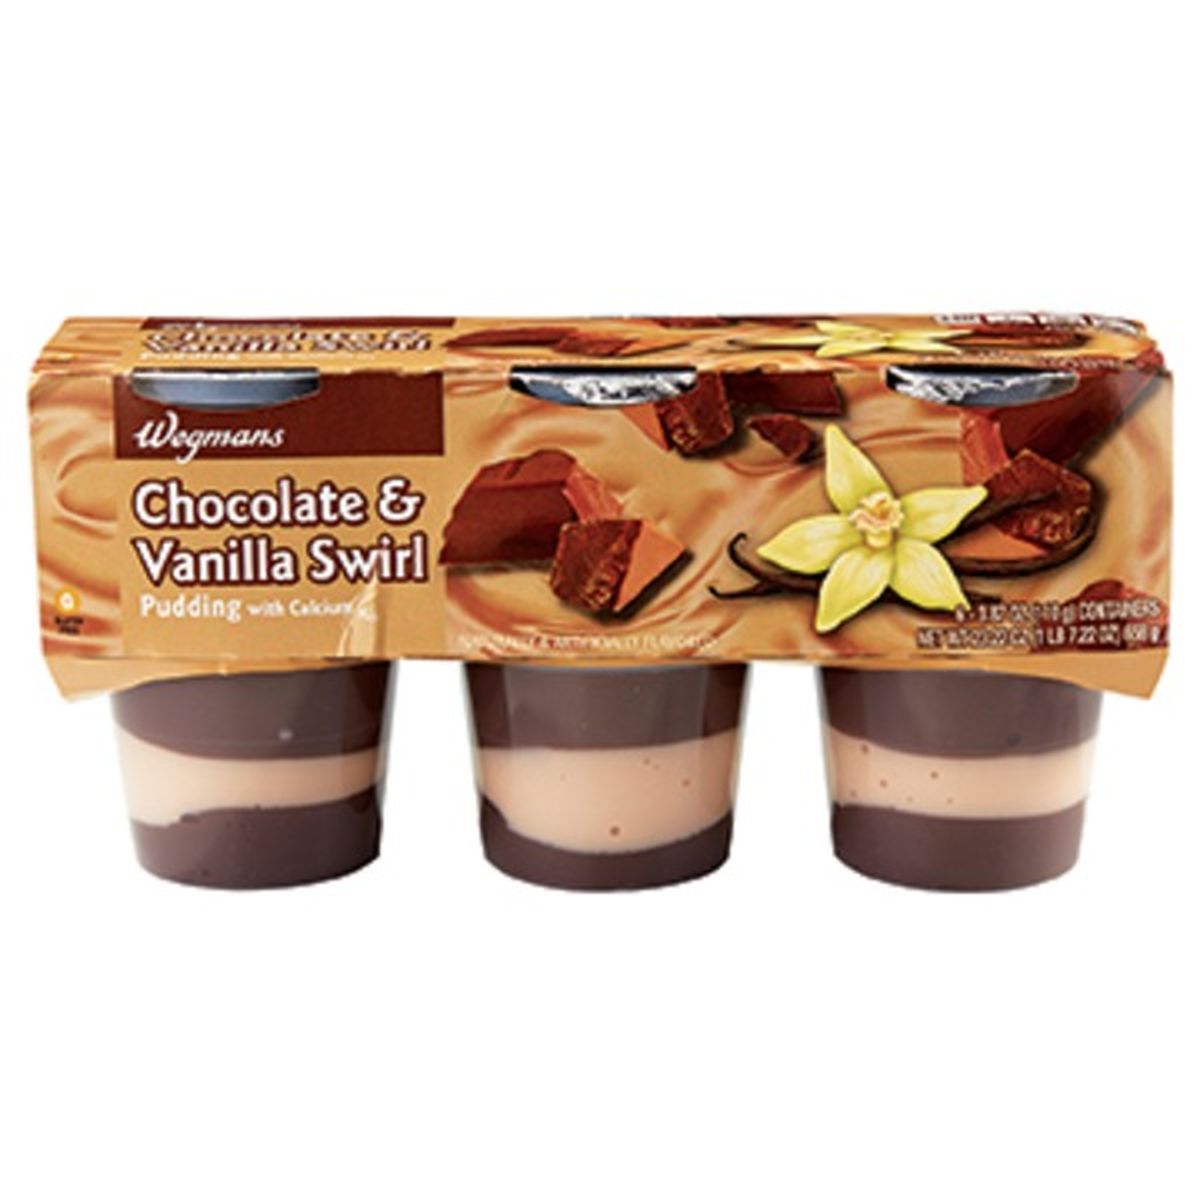 Calories in Wegmans Chocolate & Vanilla Swirl Pudding